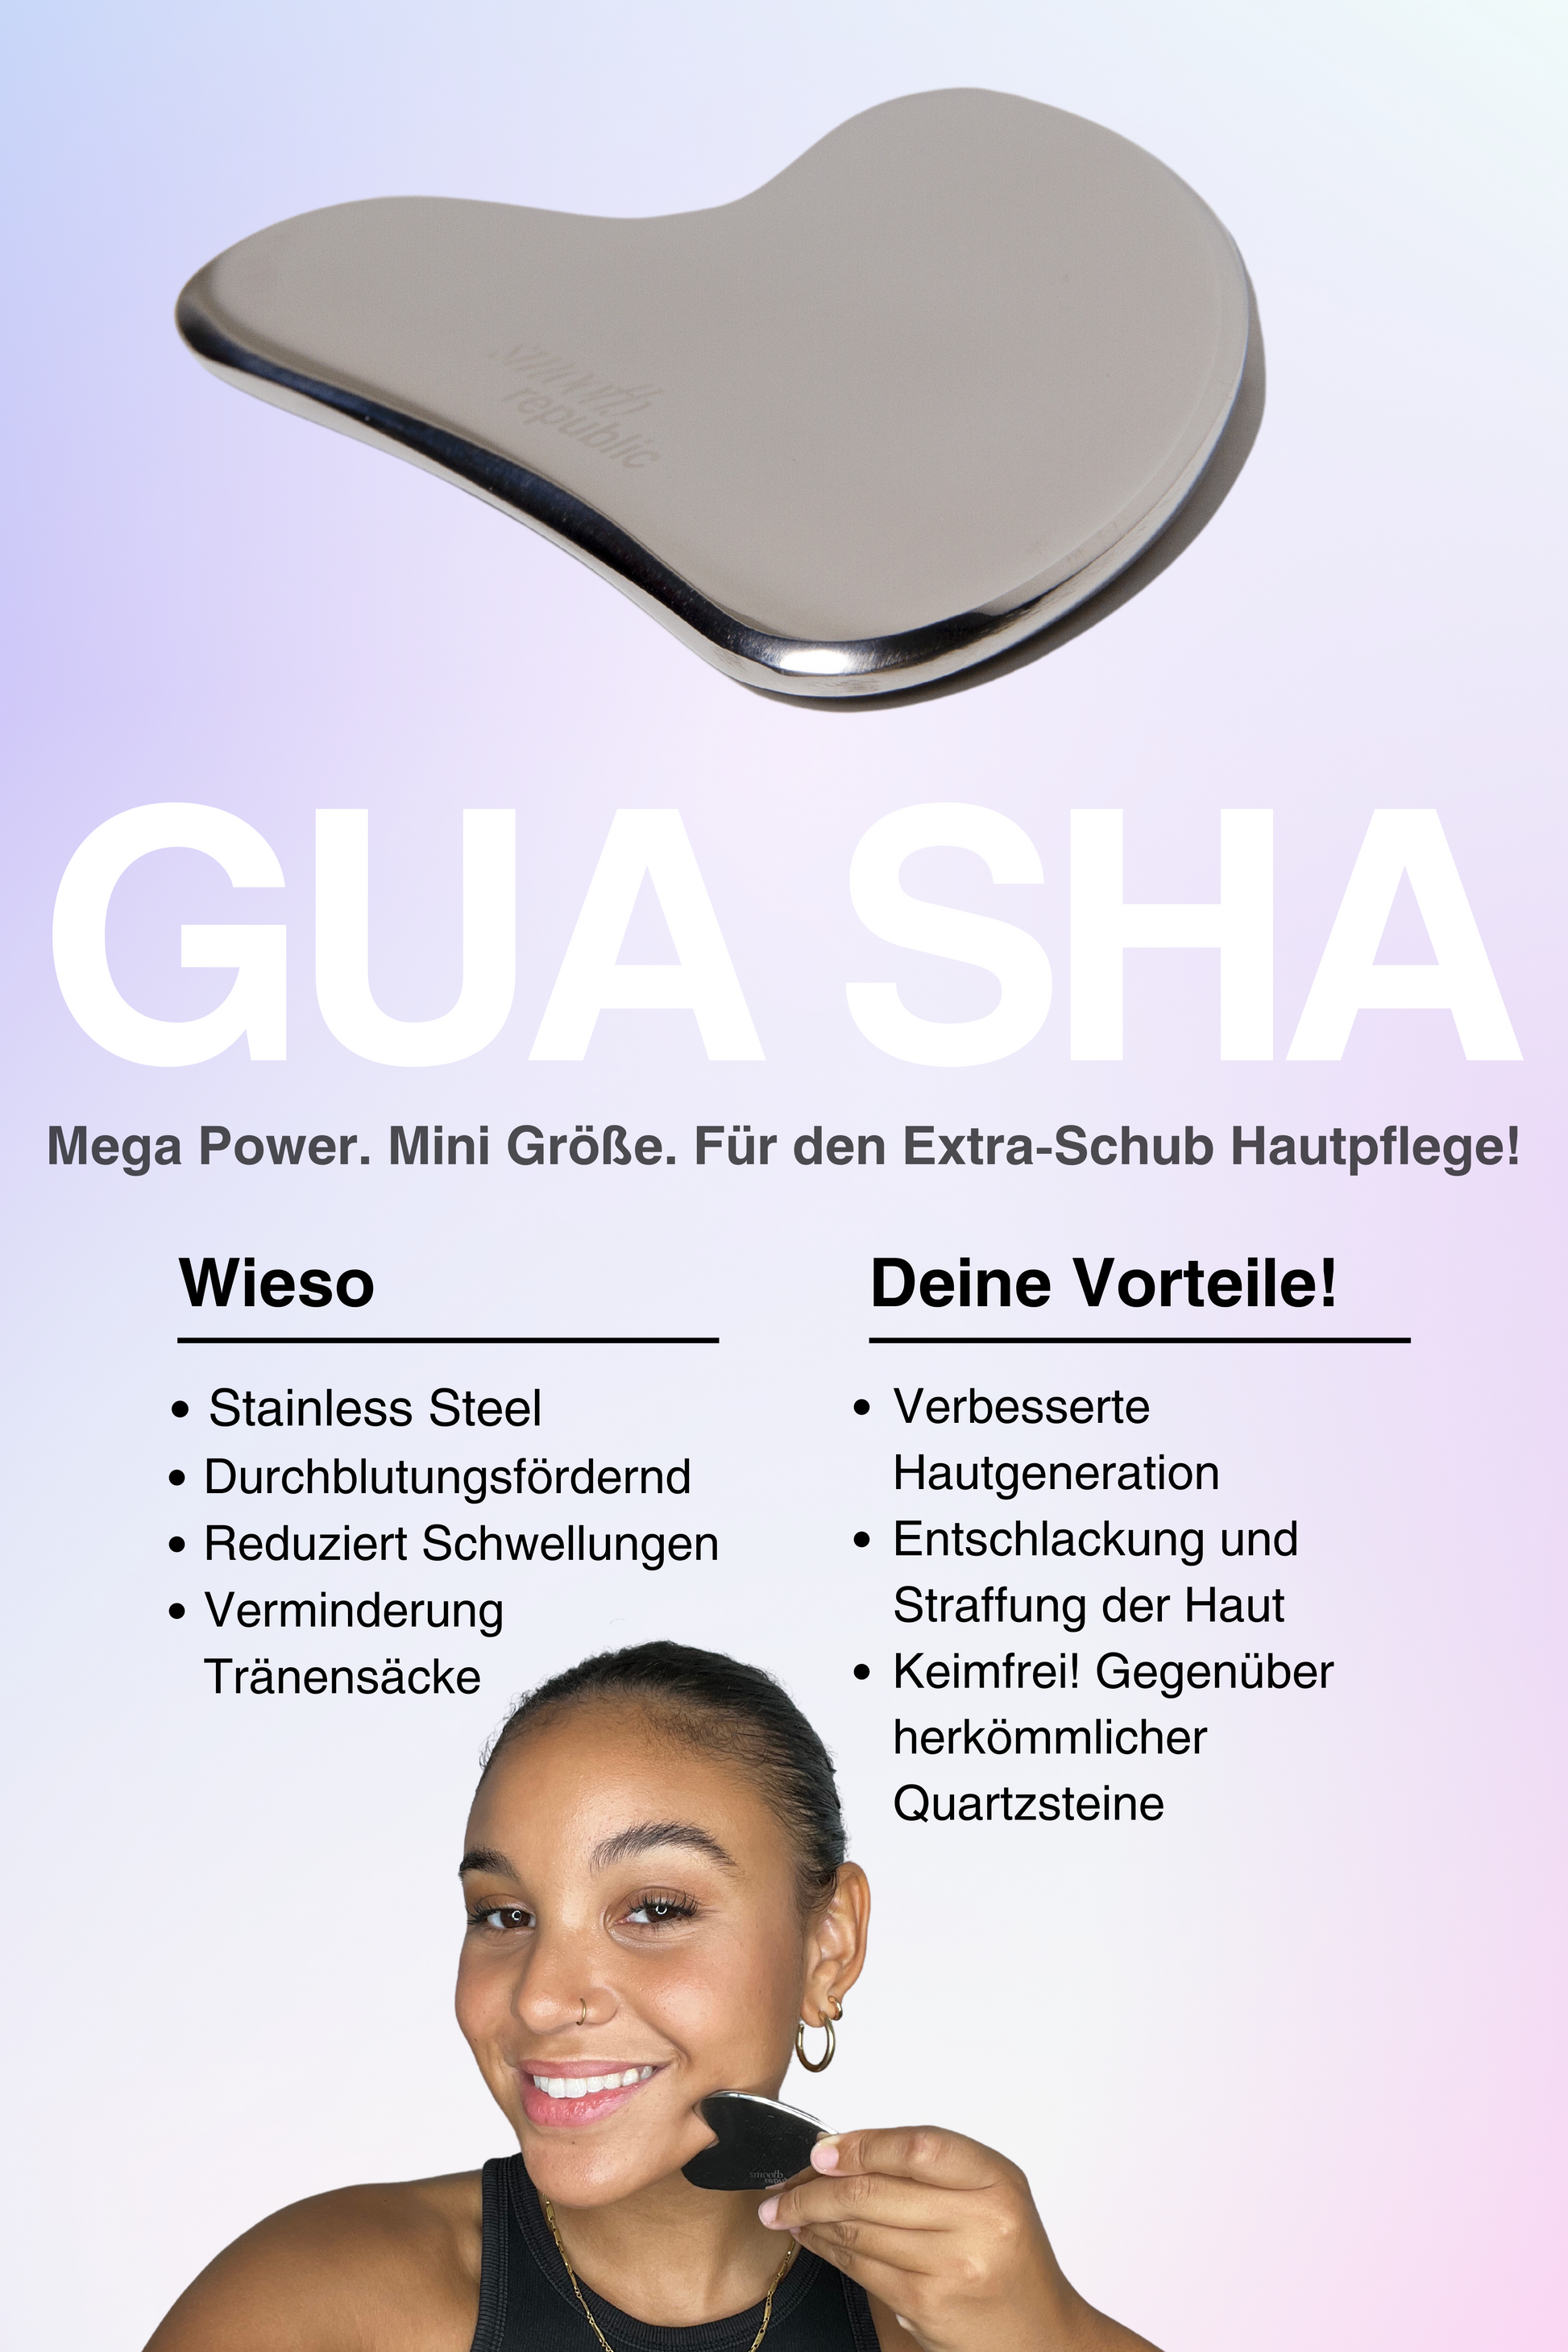 Steel Gua Sha – Smooth Republic